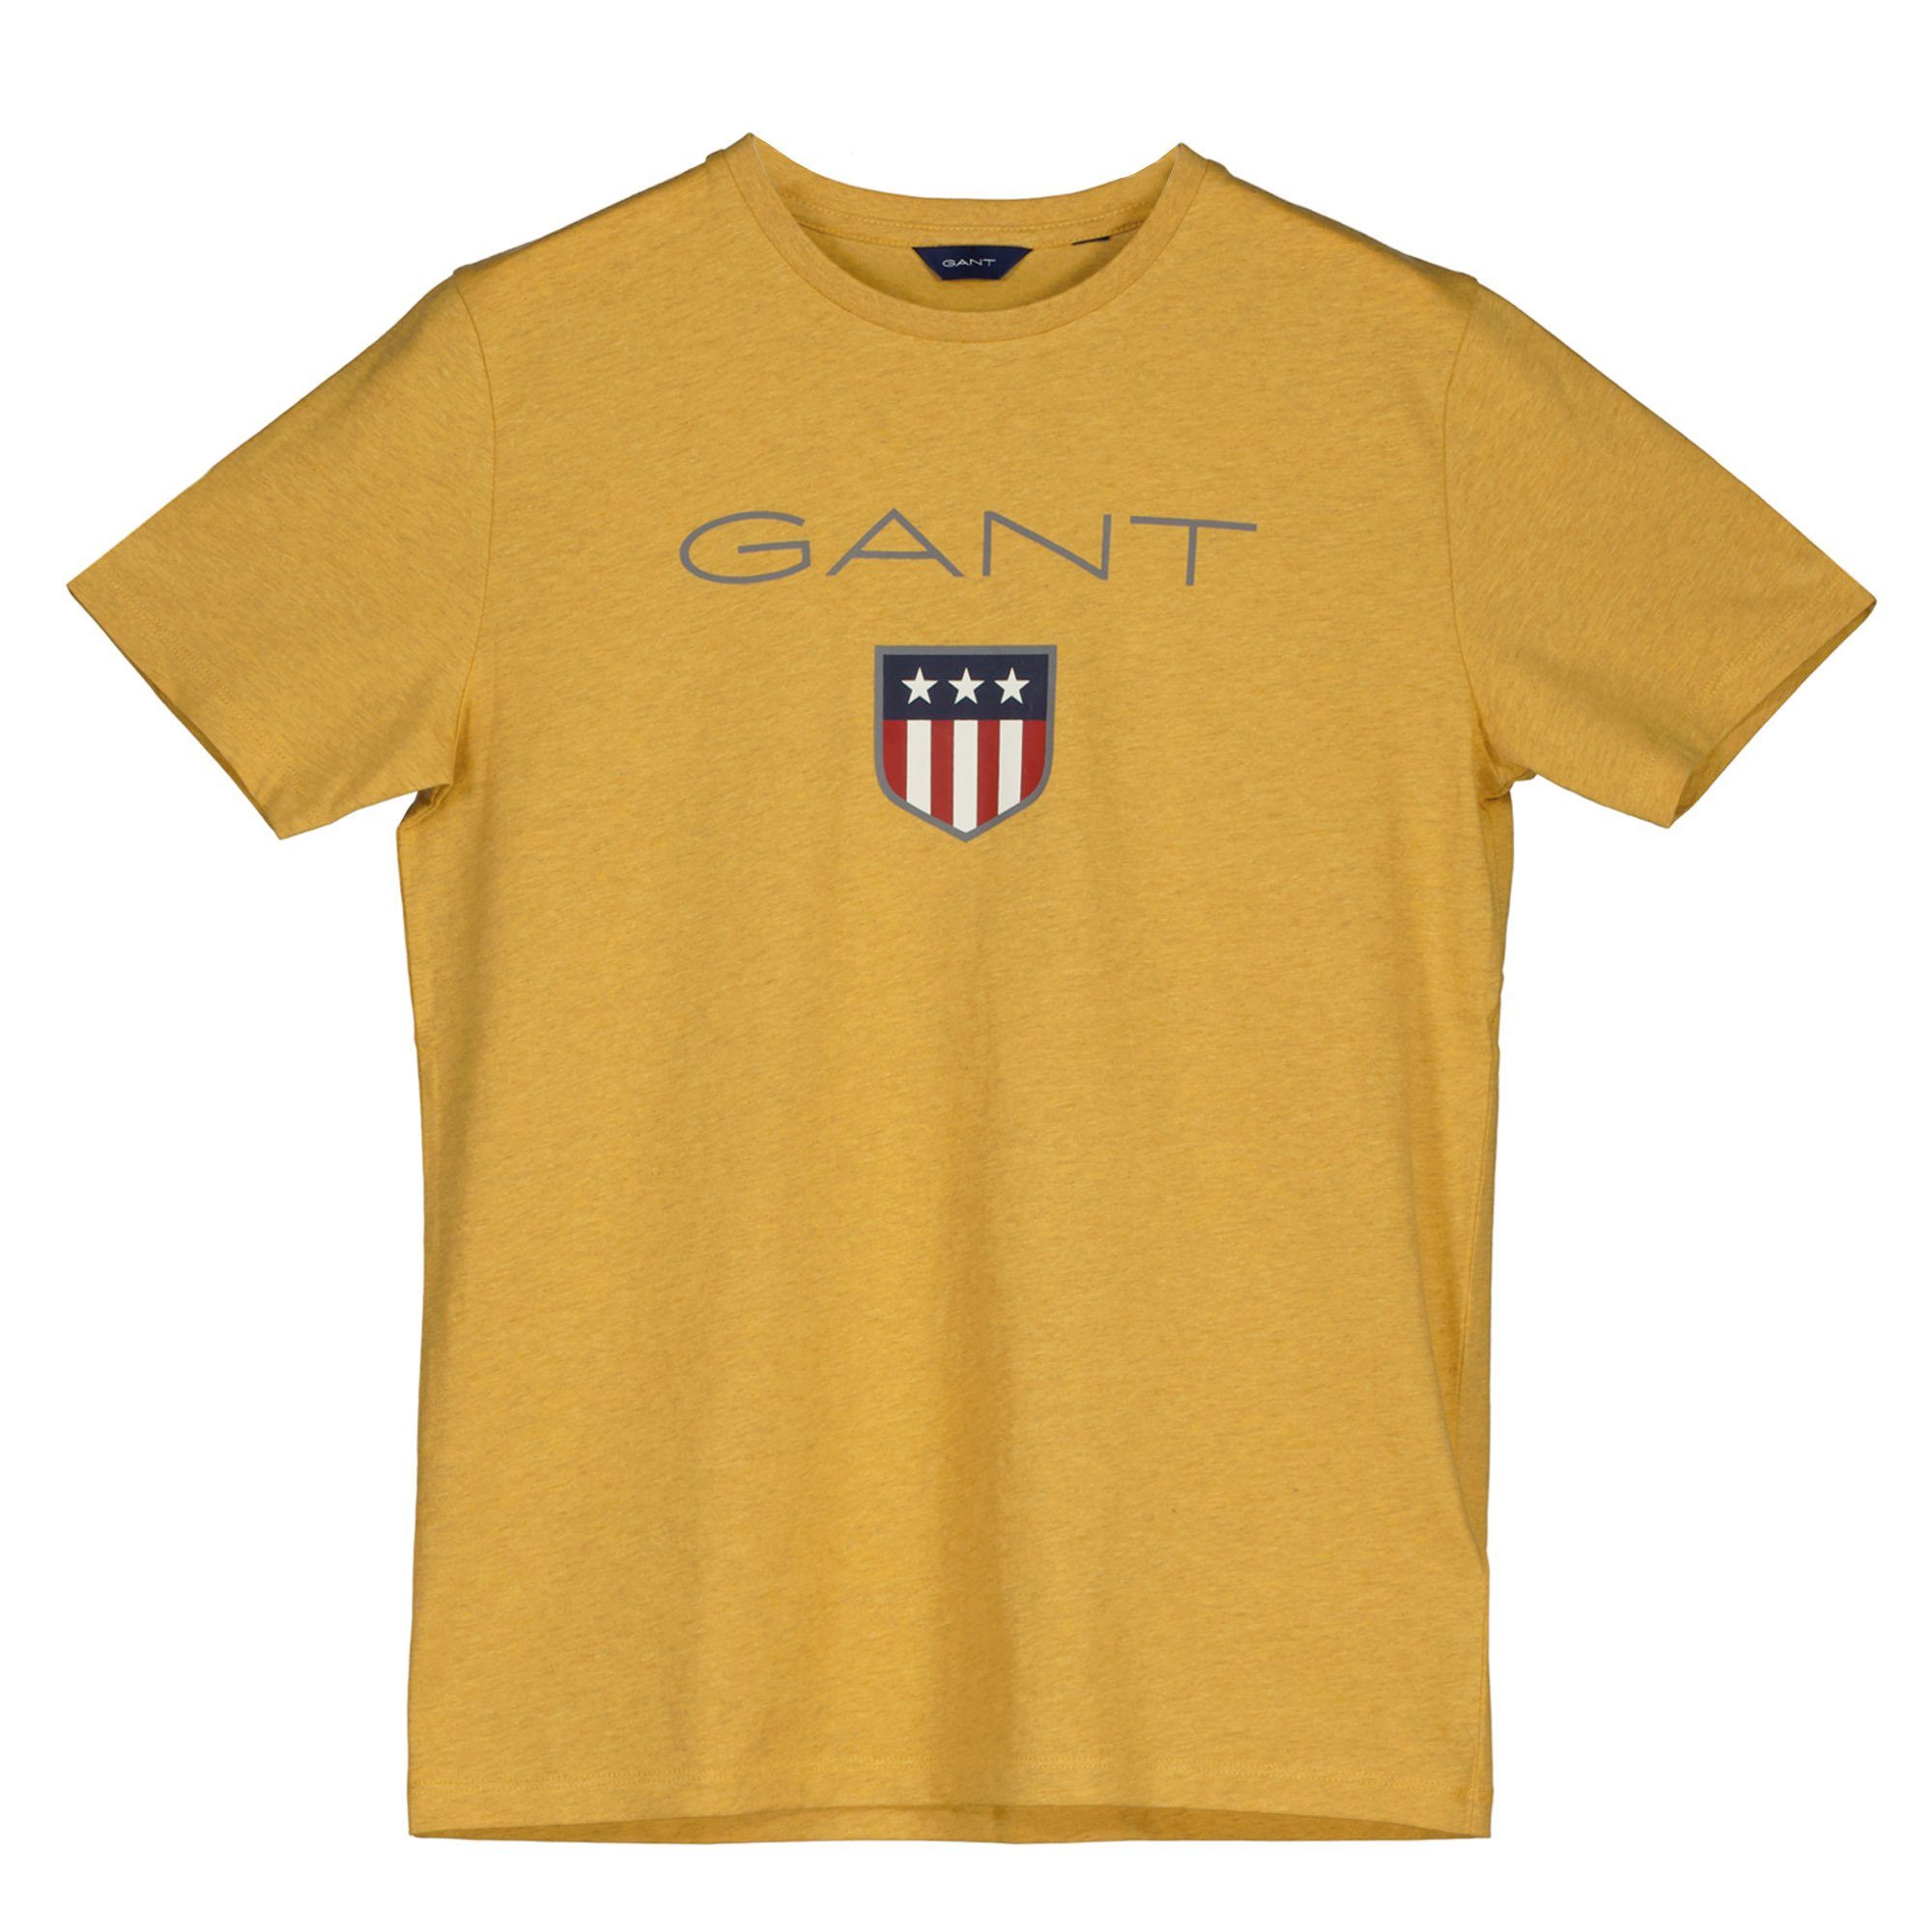 Gelb Kurzarm Boys SHIELD T-Shirt - Gant Teen Jungen T-Shirt Logo,